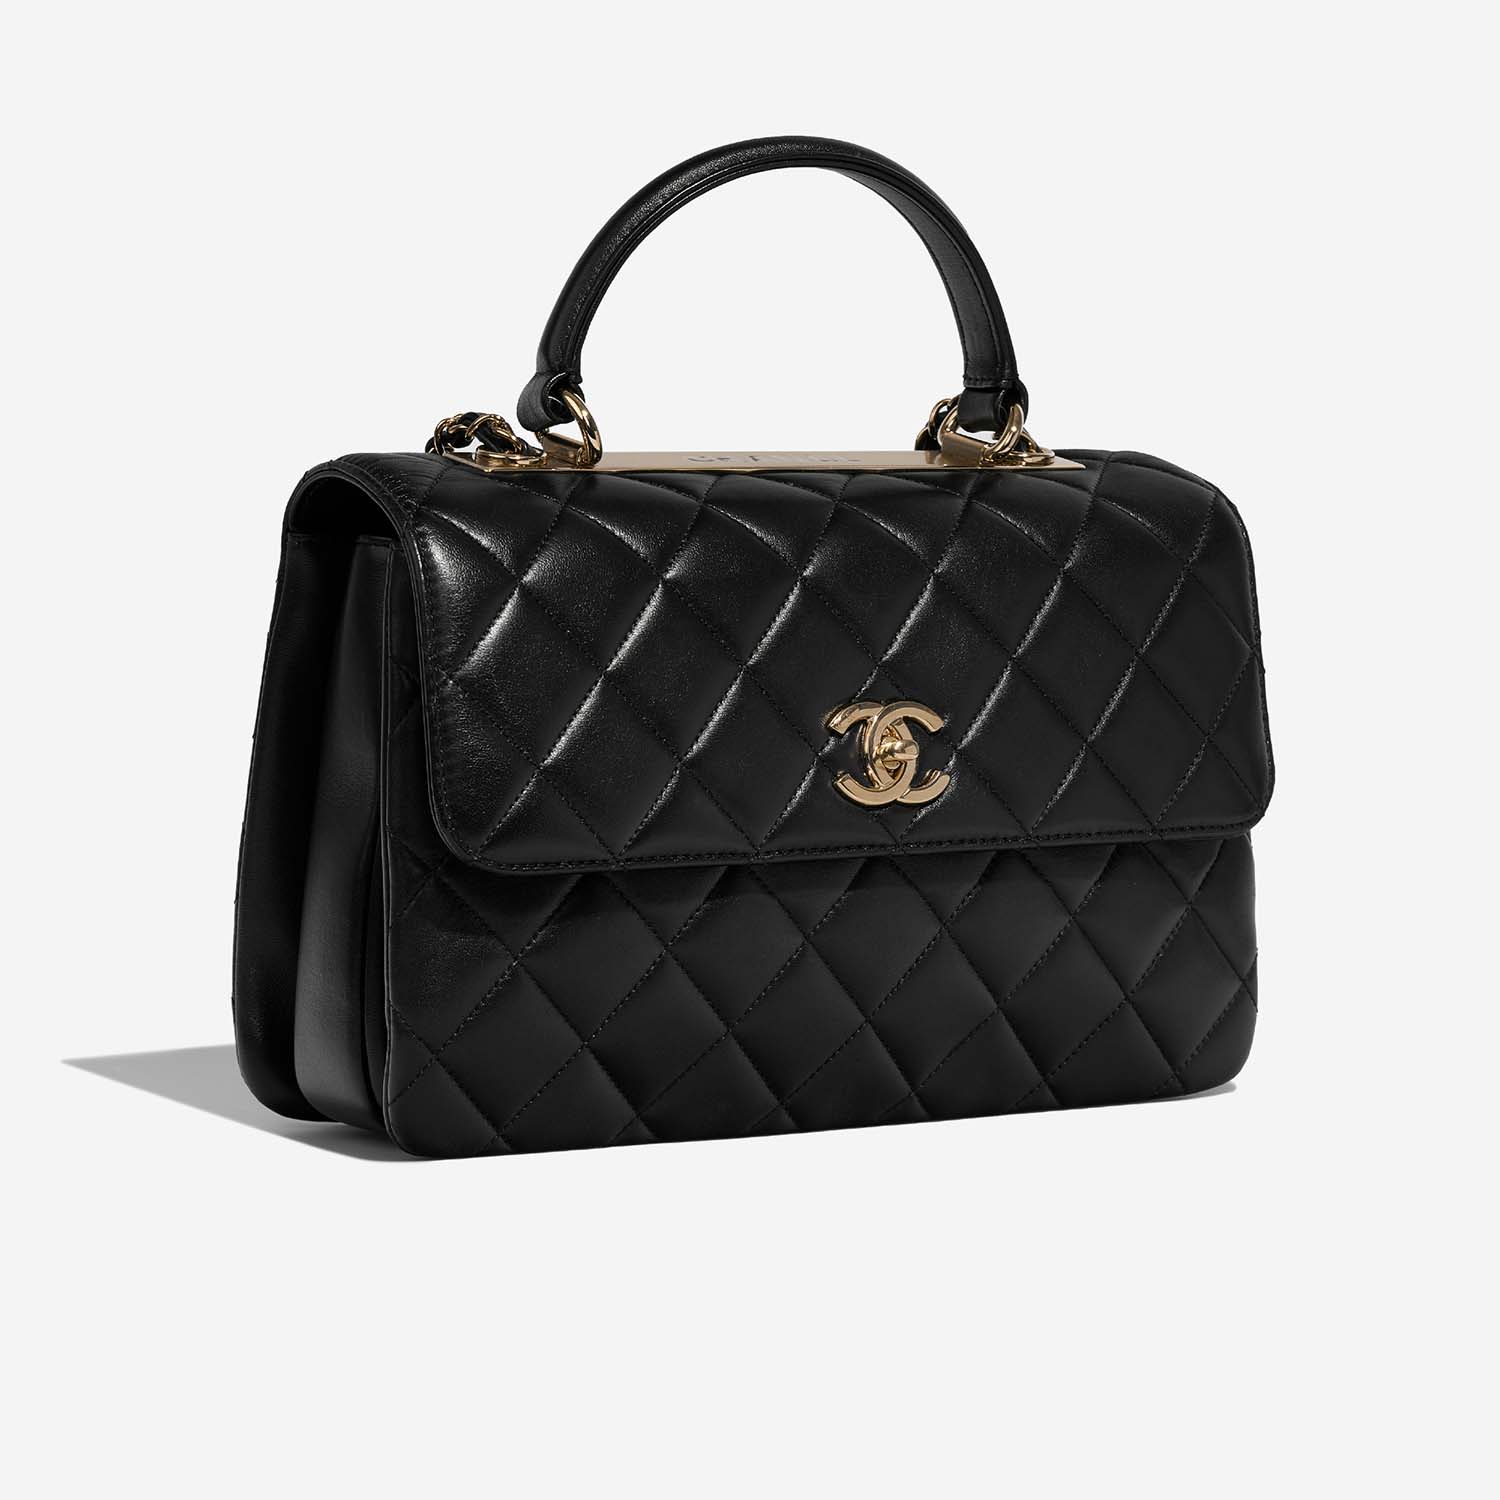 Chanel Trendy Large Black Side Front | Verkaufen Sie Ihre Designer-Tasche auf Saclab.com